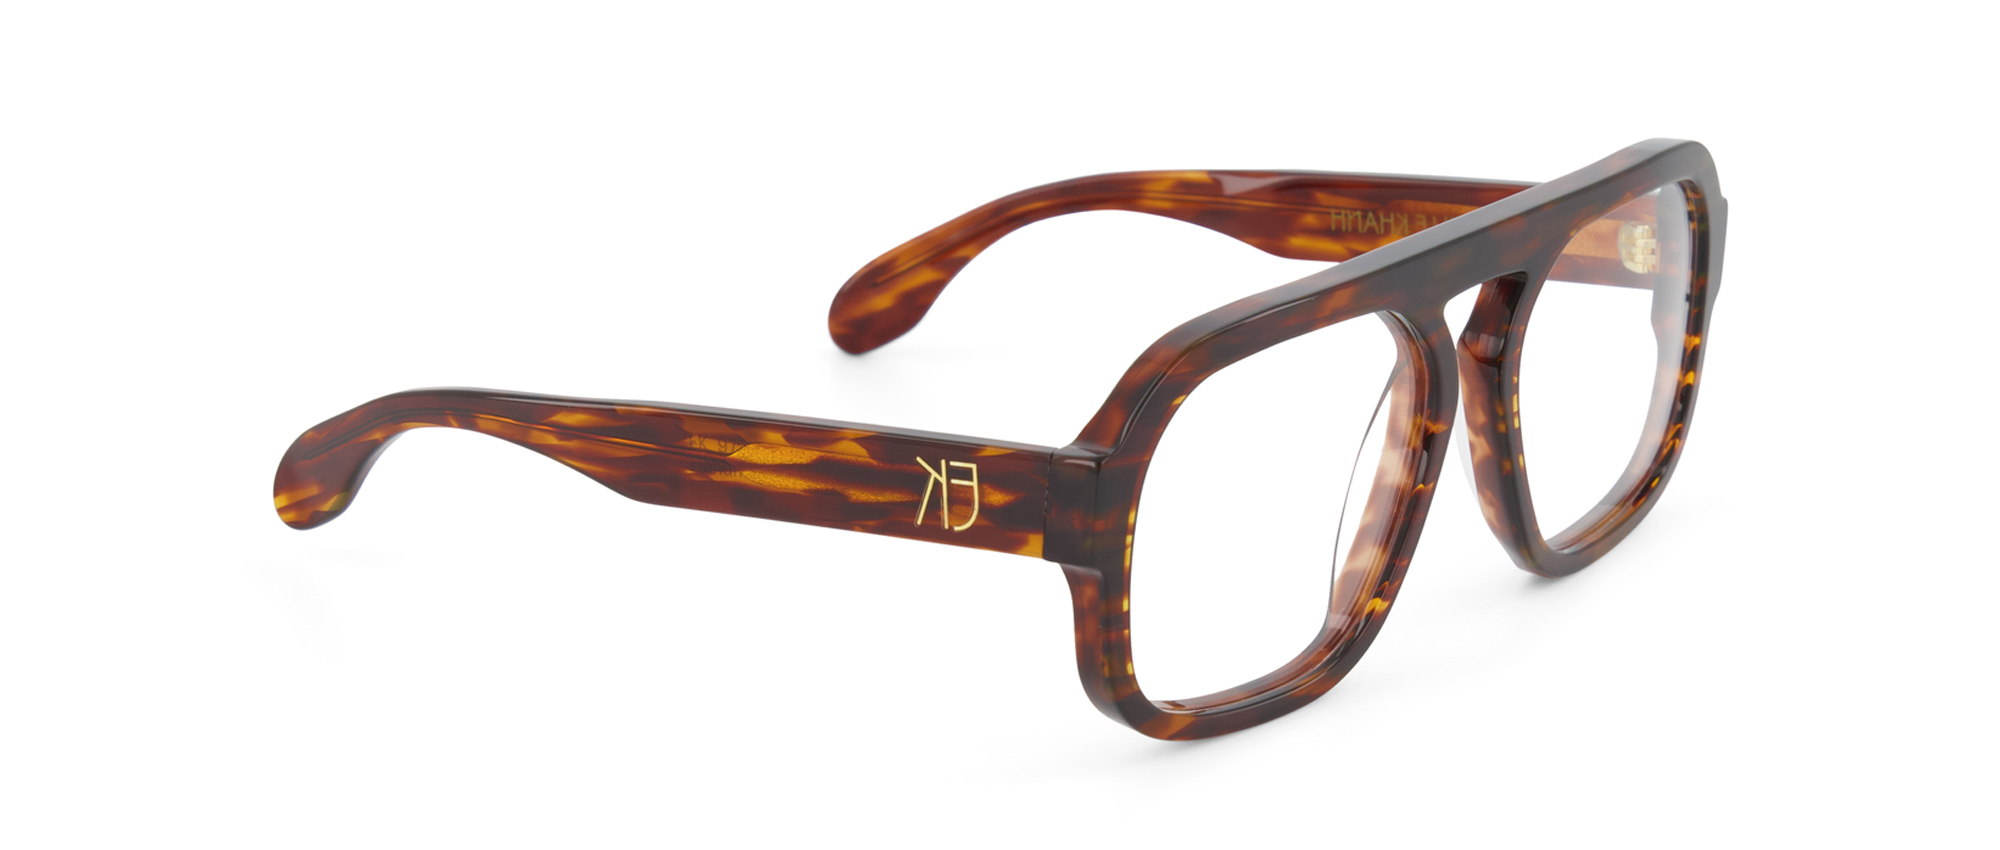 lunettes-ecaille-emmanuelle-khanh-9722